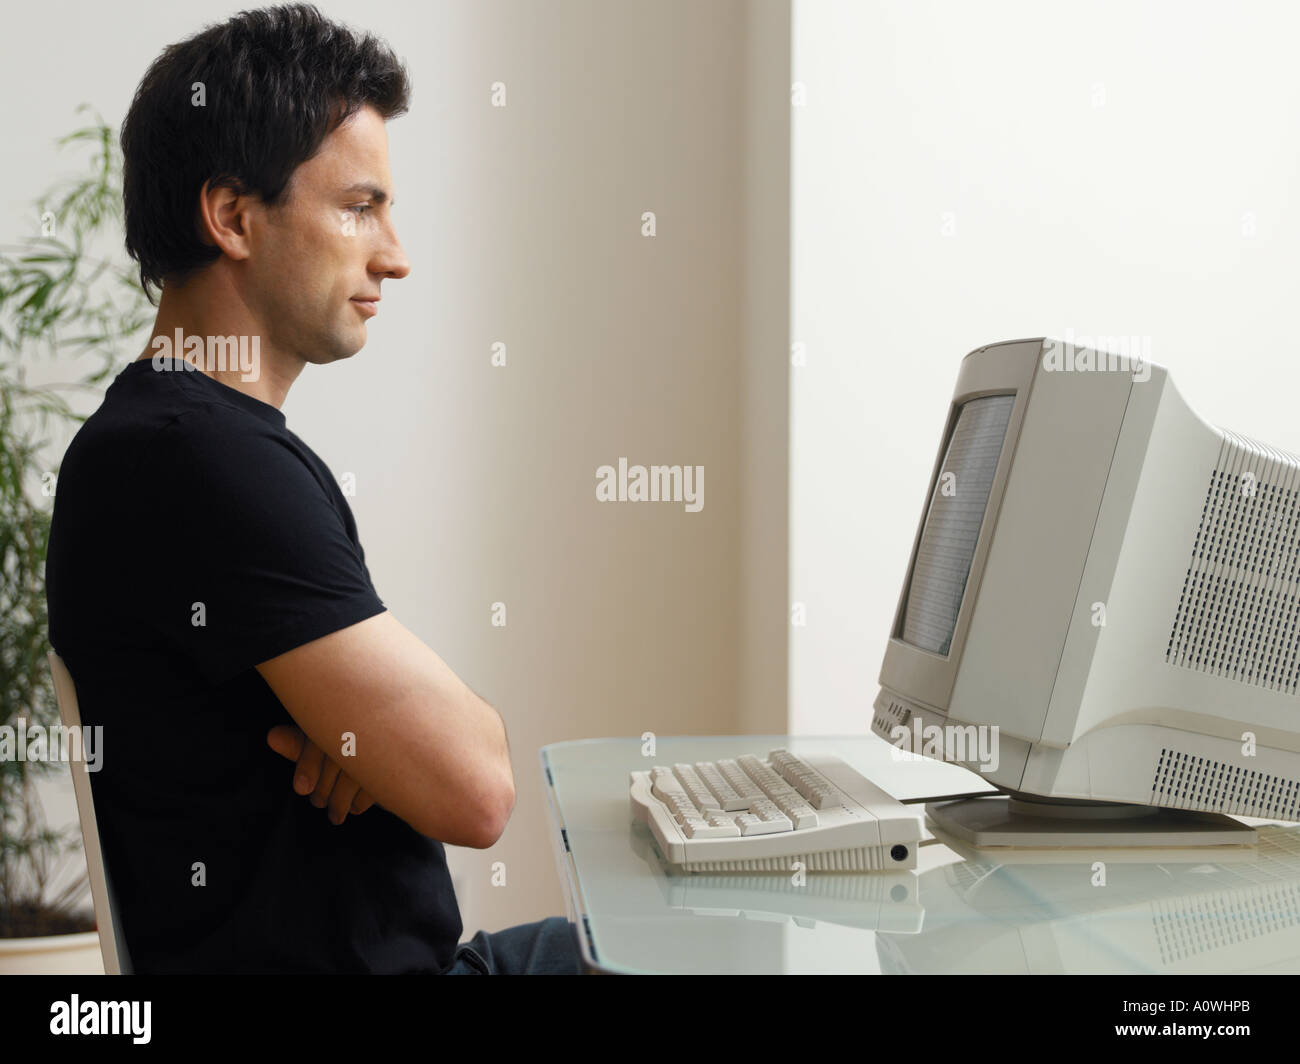 Man looking at computer screen Stock Photo